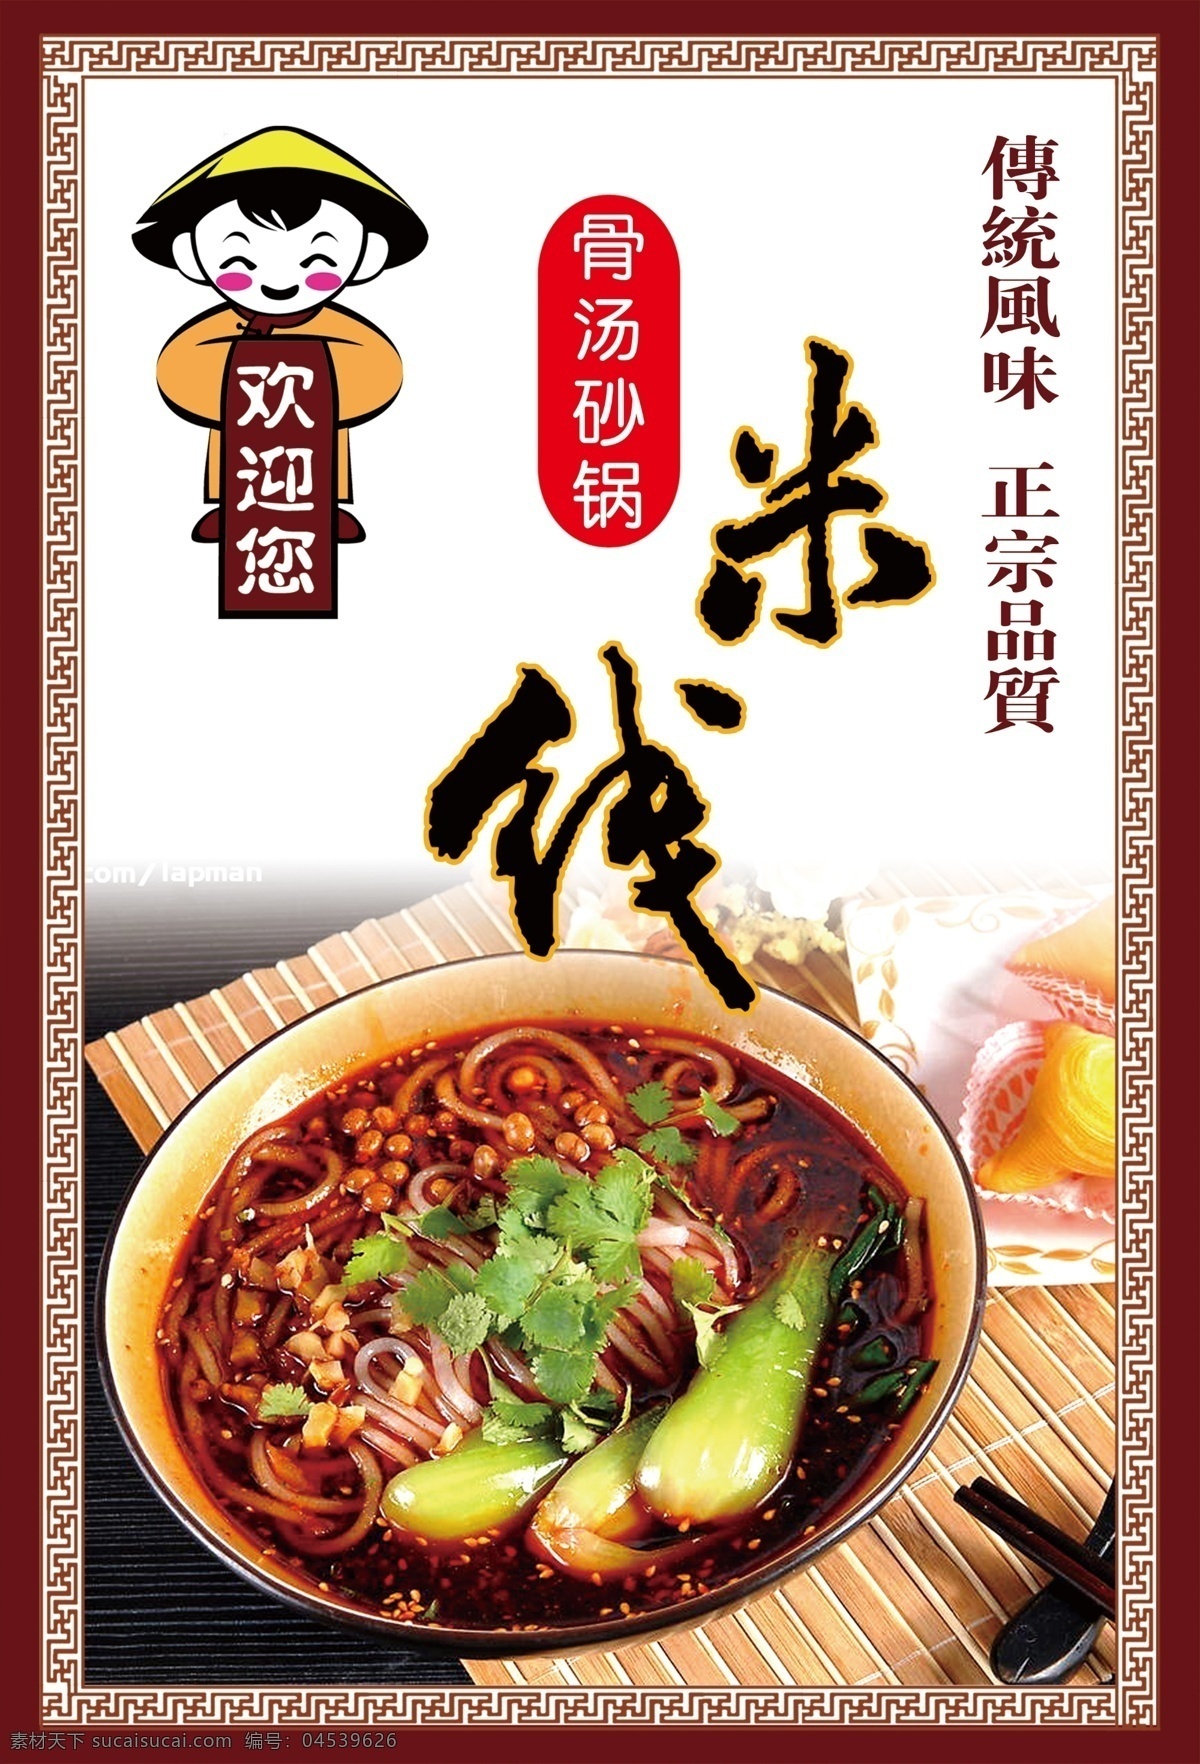 骨汤砂锅米线 砂锅米线 永和豆浆小人 米经线 边框花纹 菜单